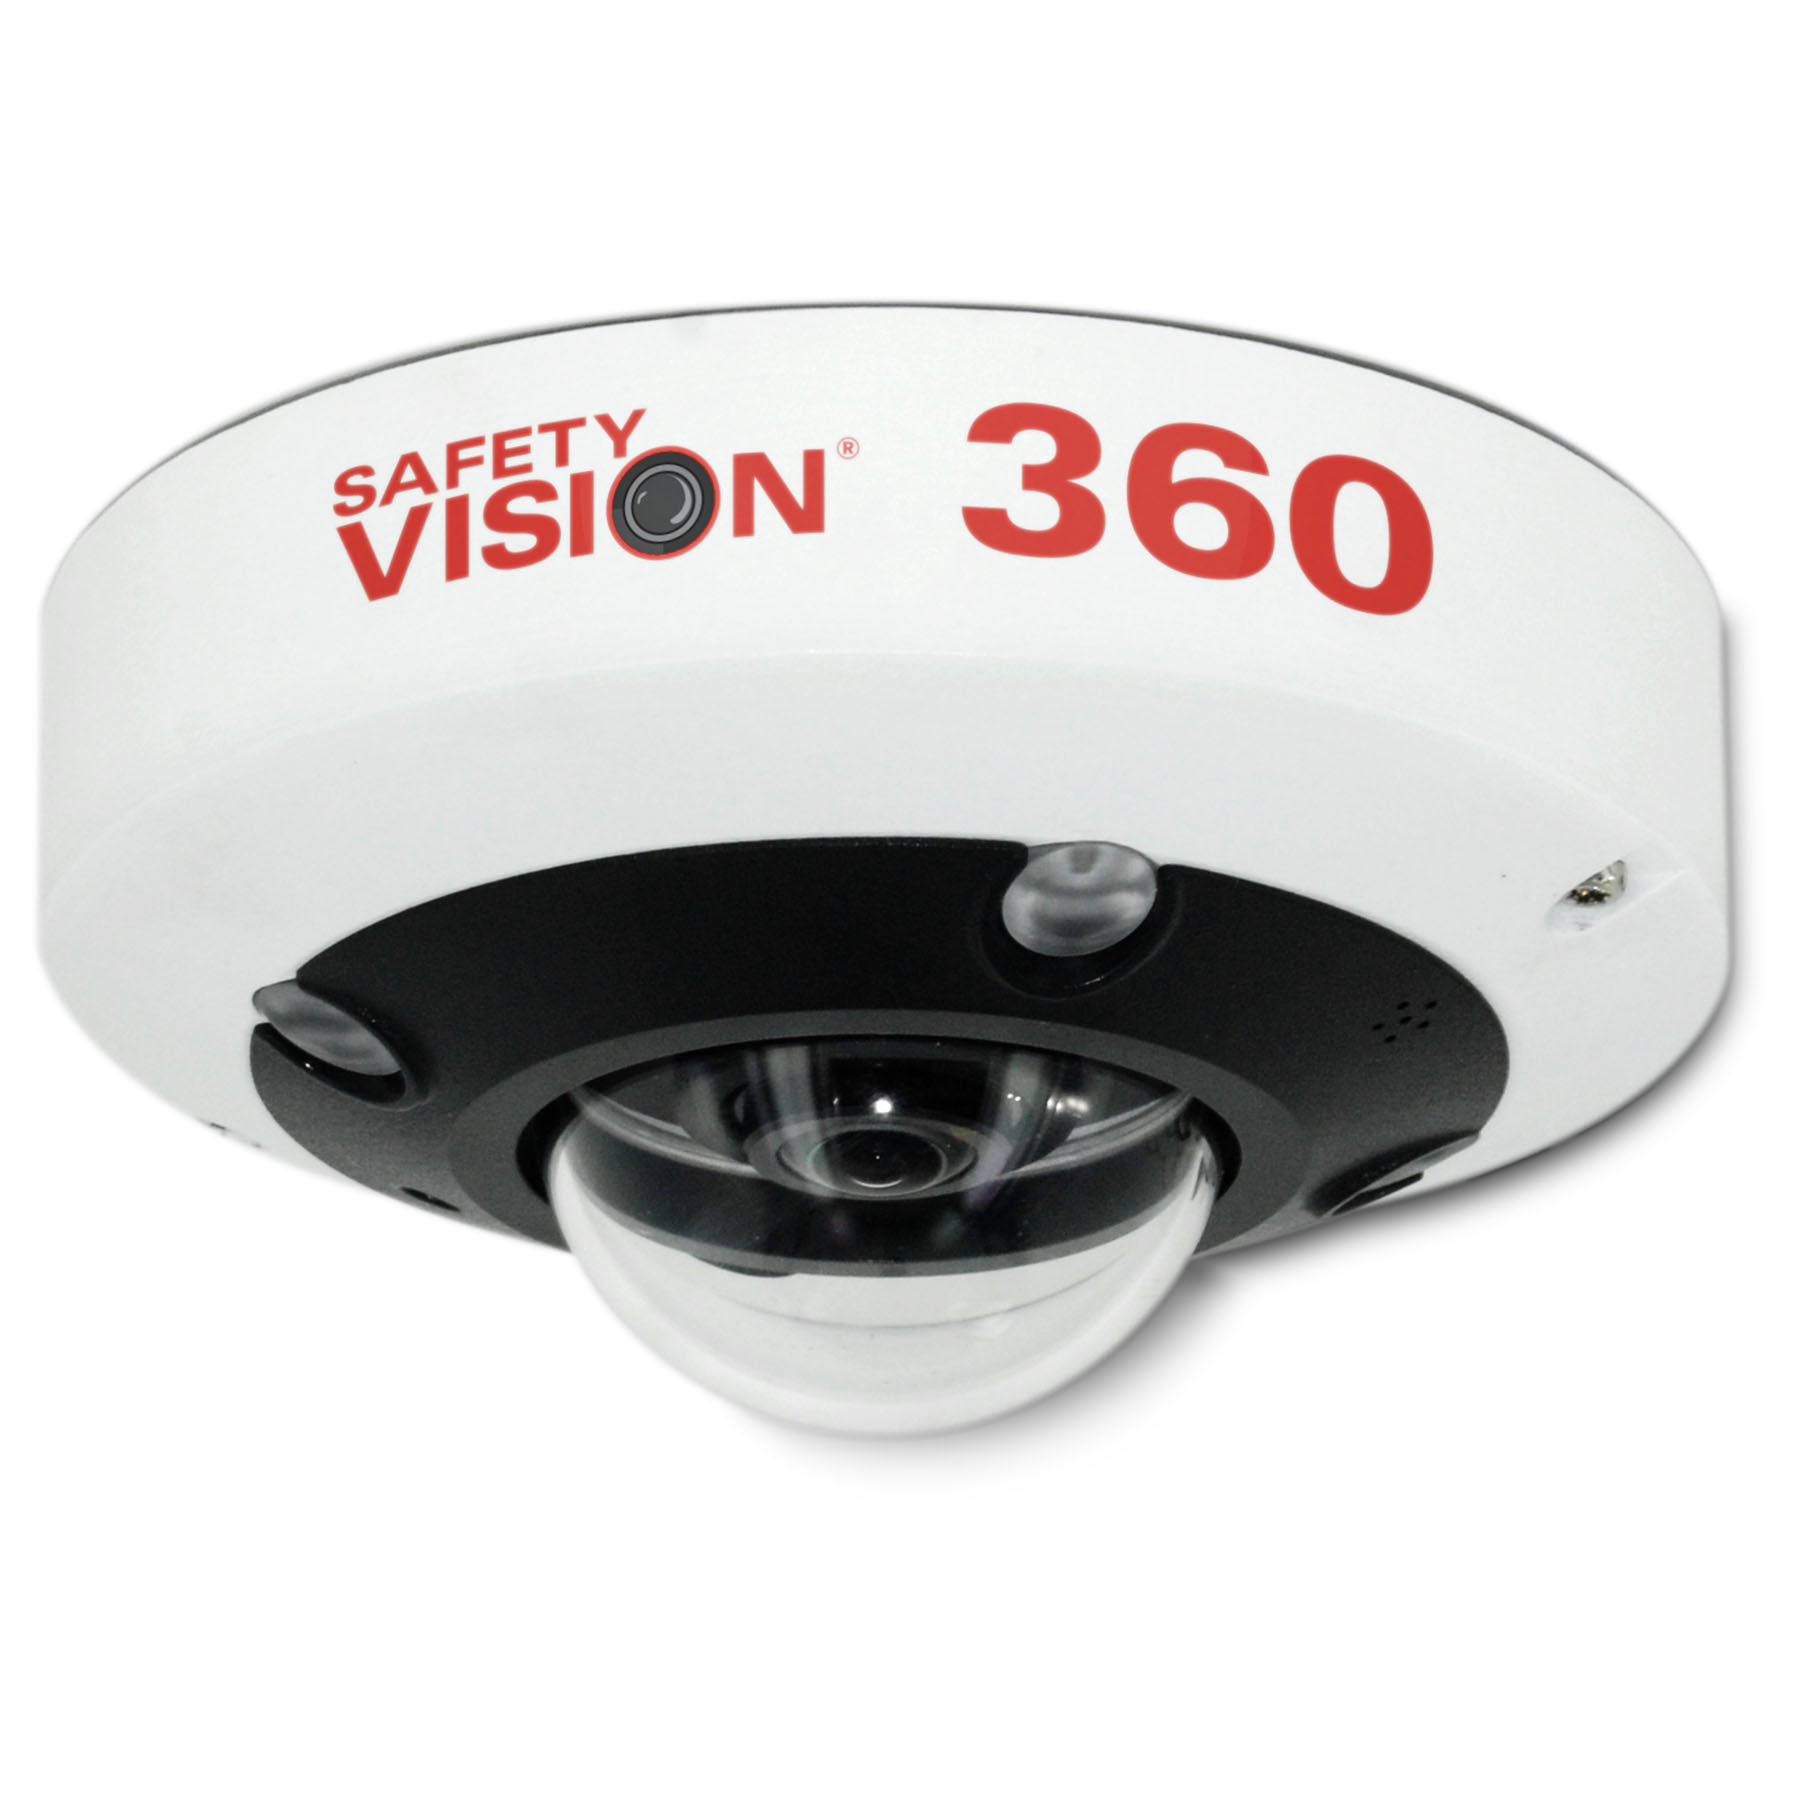 Las mejores cámaras ocultas y cómo detectarlas - Revista Seguridad 360